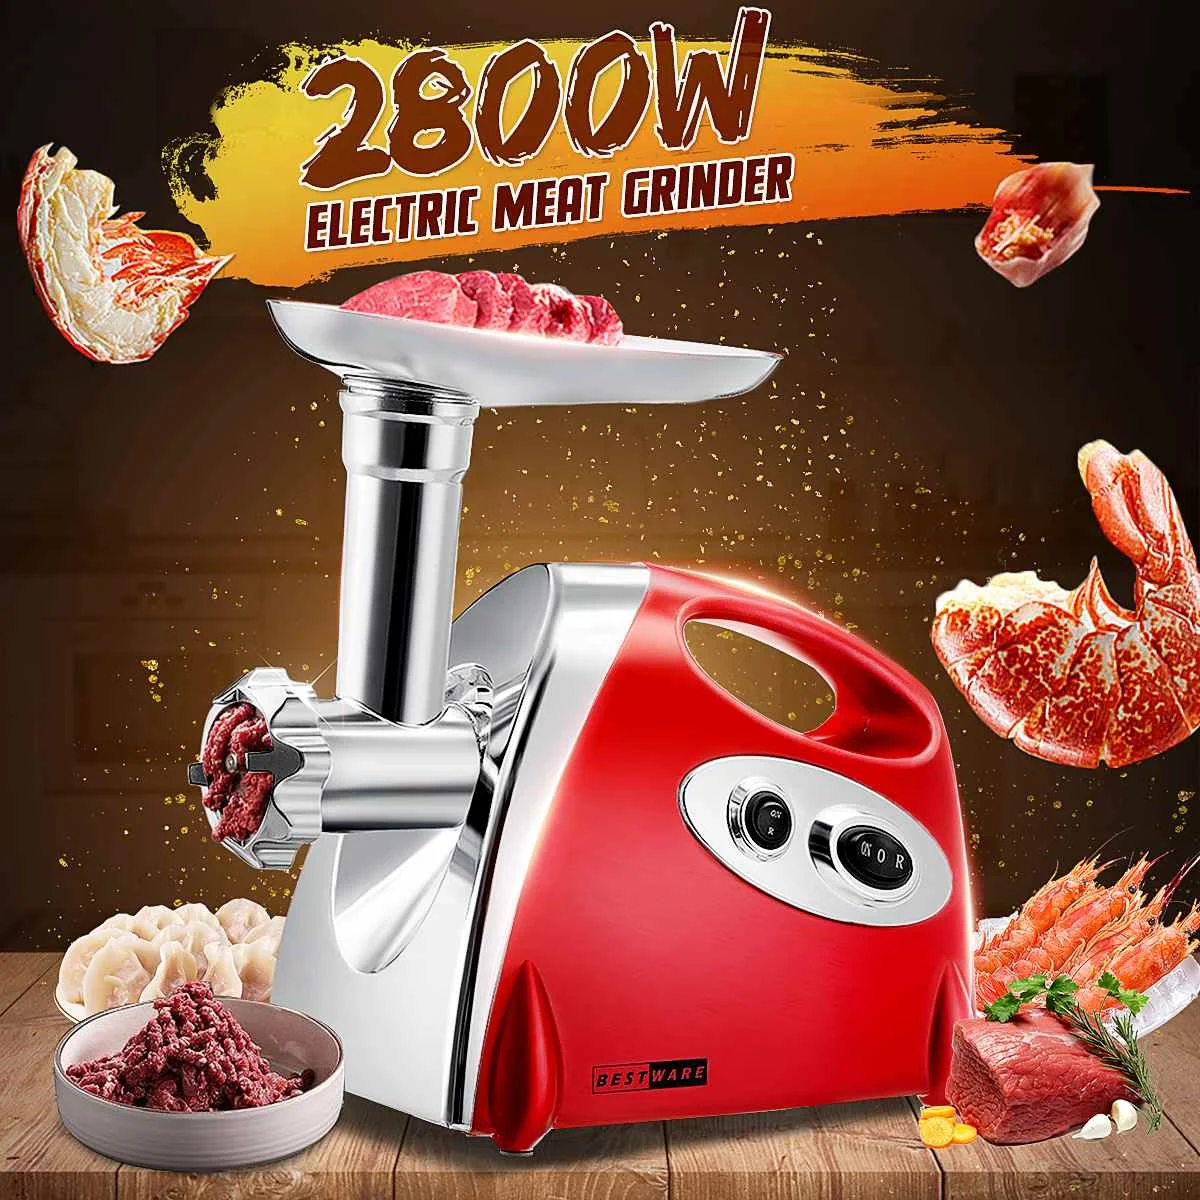 

110V-220V Electric Meat Grinders 2800W Heavy Duty Grinder Mincer Sausage Stuffer Maker Kitchen Slicer Food Processor Machine